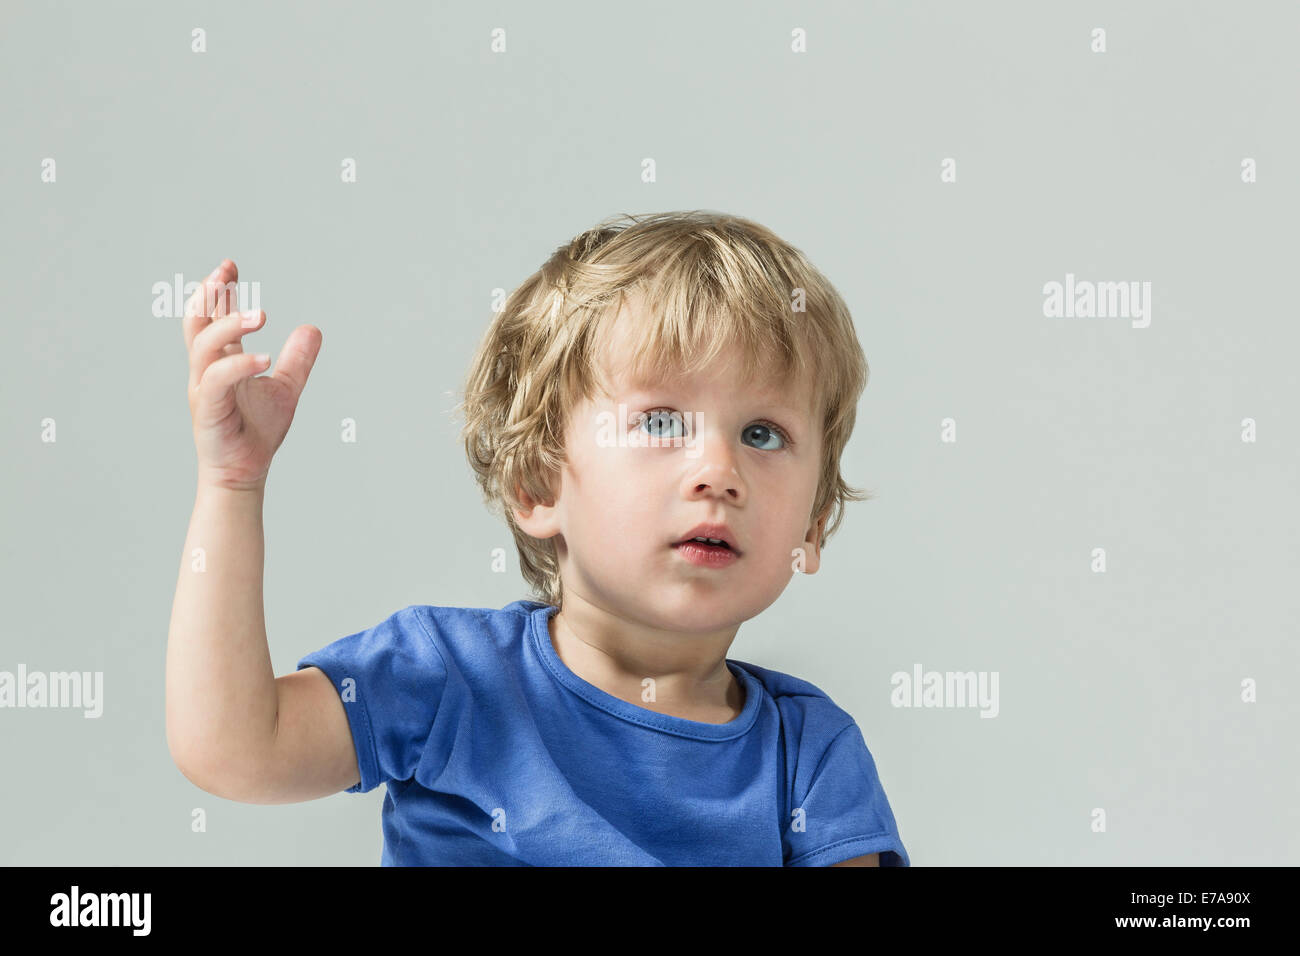 Cute baby boy looking up avec la main posée sur fond gris Banque D'Images